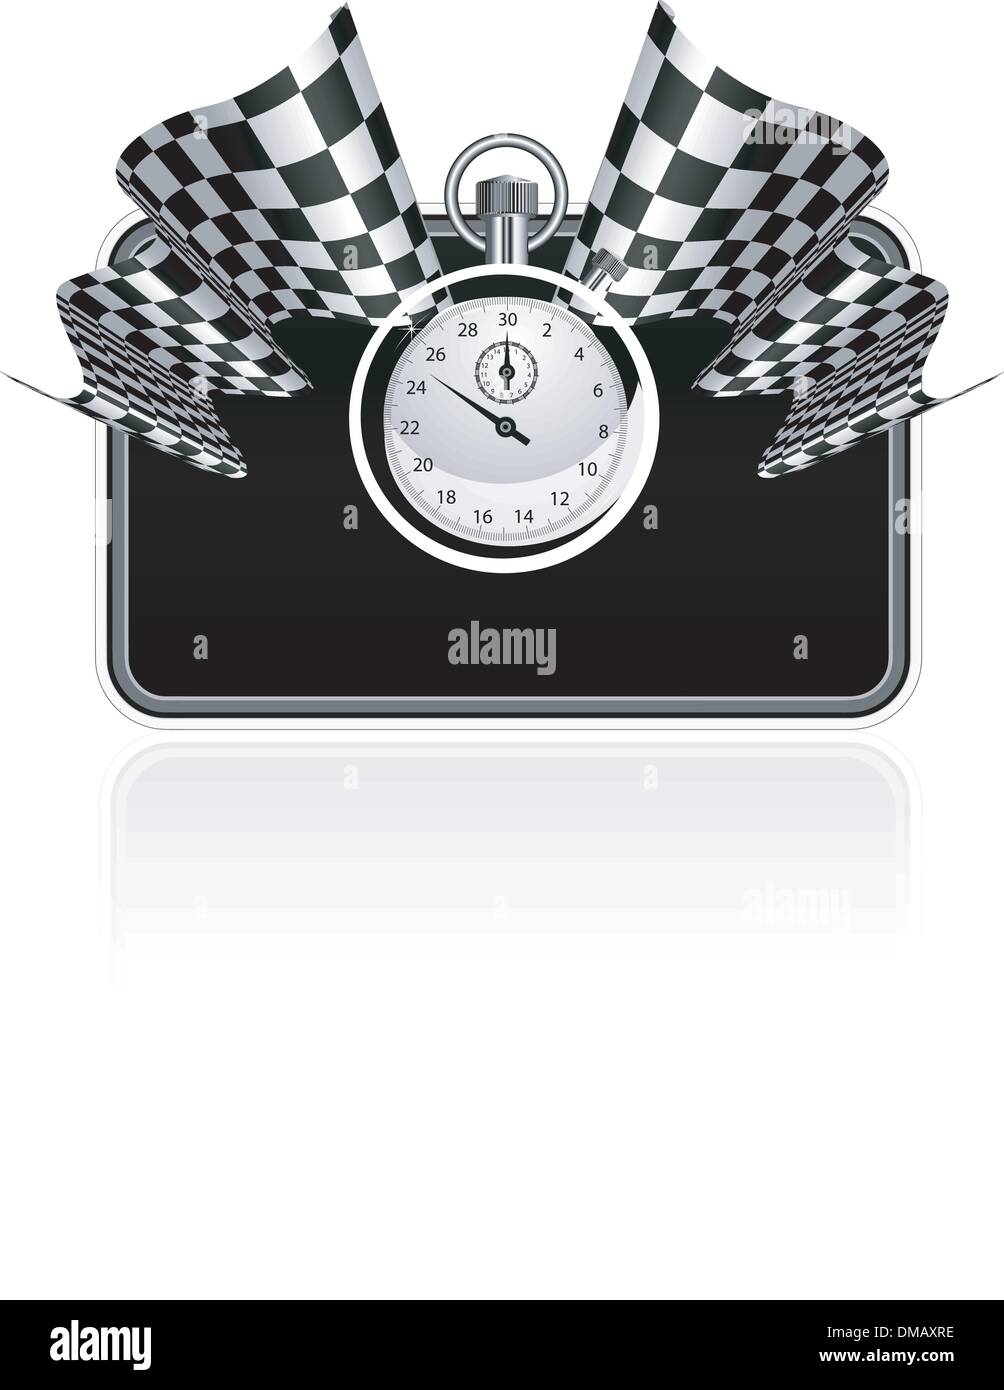 Drapeau à damier avec un chronomètre background Illustration de Vecteur